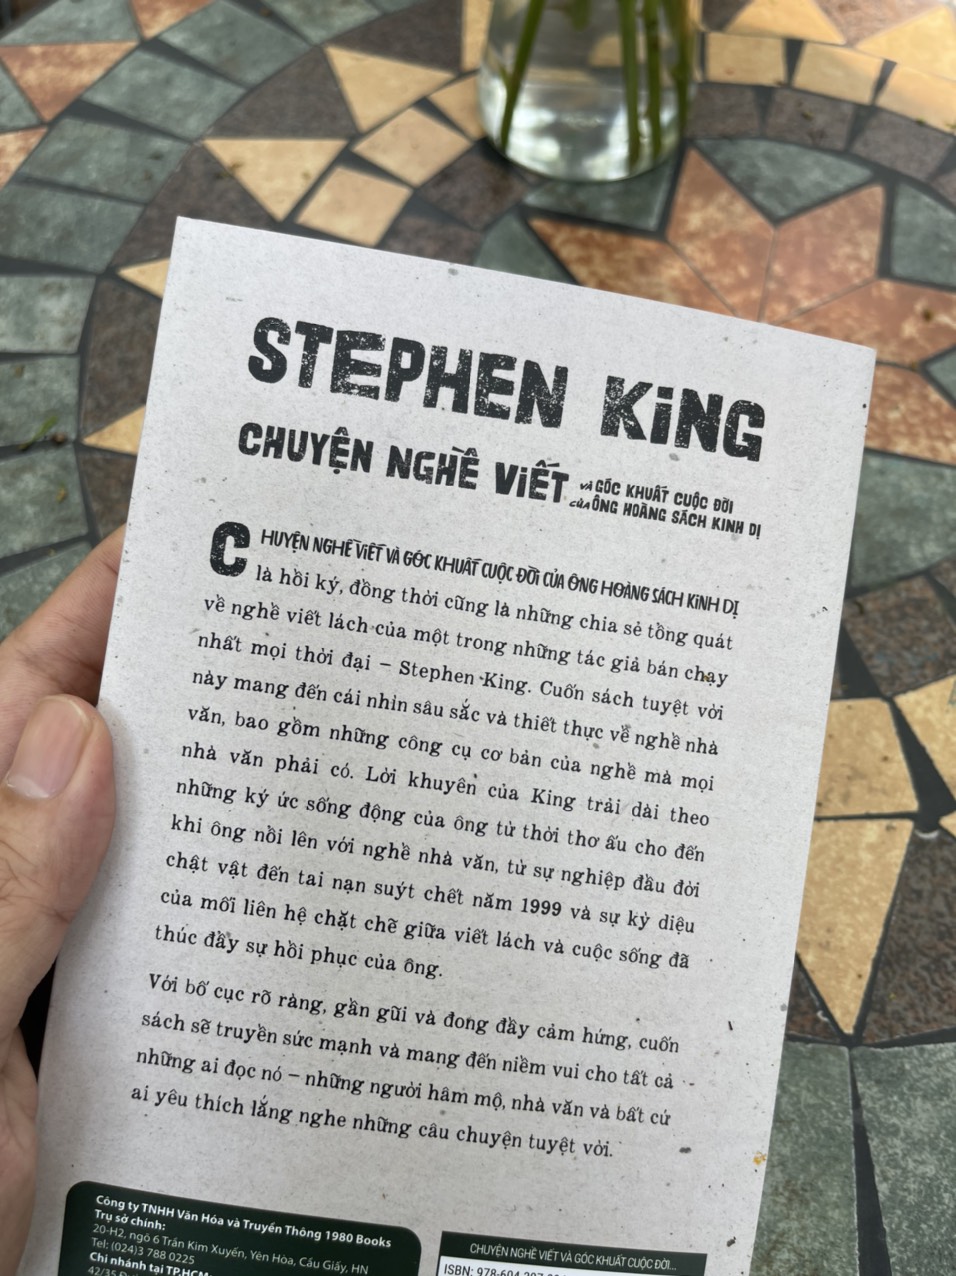 CHUYỆN NGHỀ VIẾT VÀ GÓC KHUẤT CUỘC ĐỜI CỦA ÔNG HOÀNG KINH DỊ – Stephen King – Nguyễn Hà An dịch – 1980books – NXB Thanh Niên (Bìa mềm)